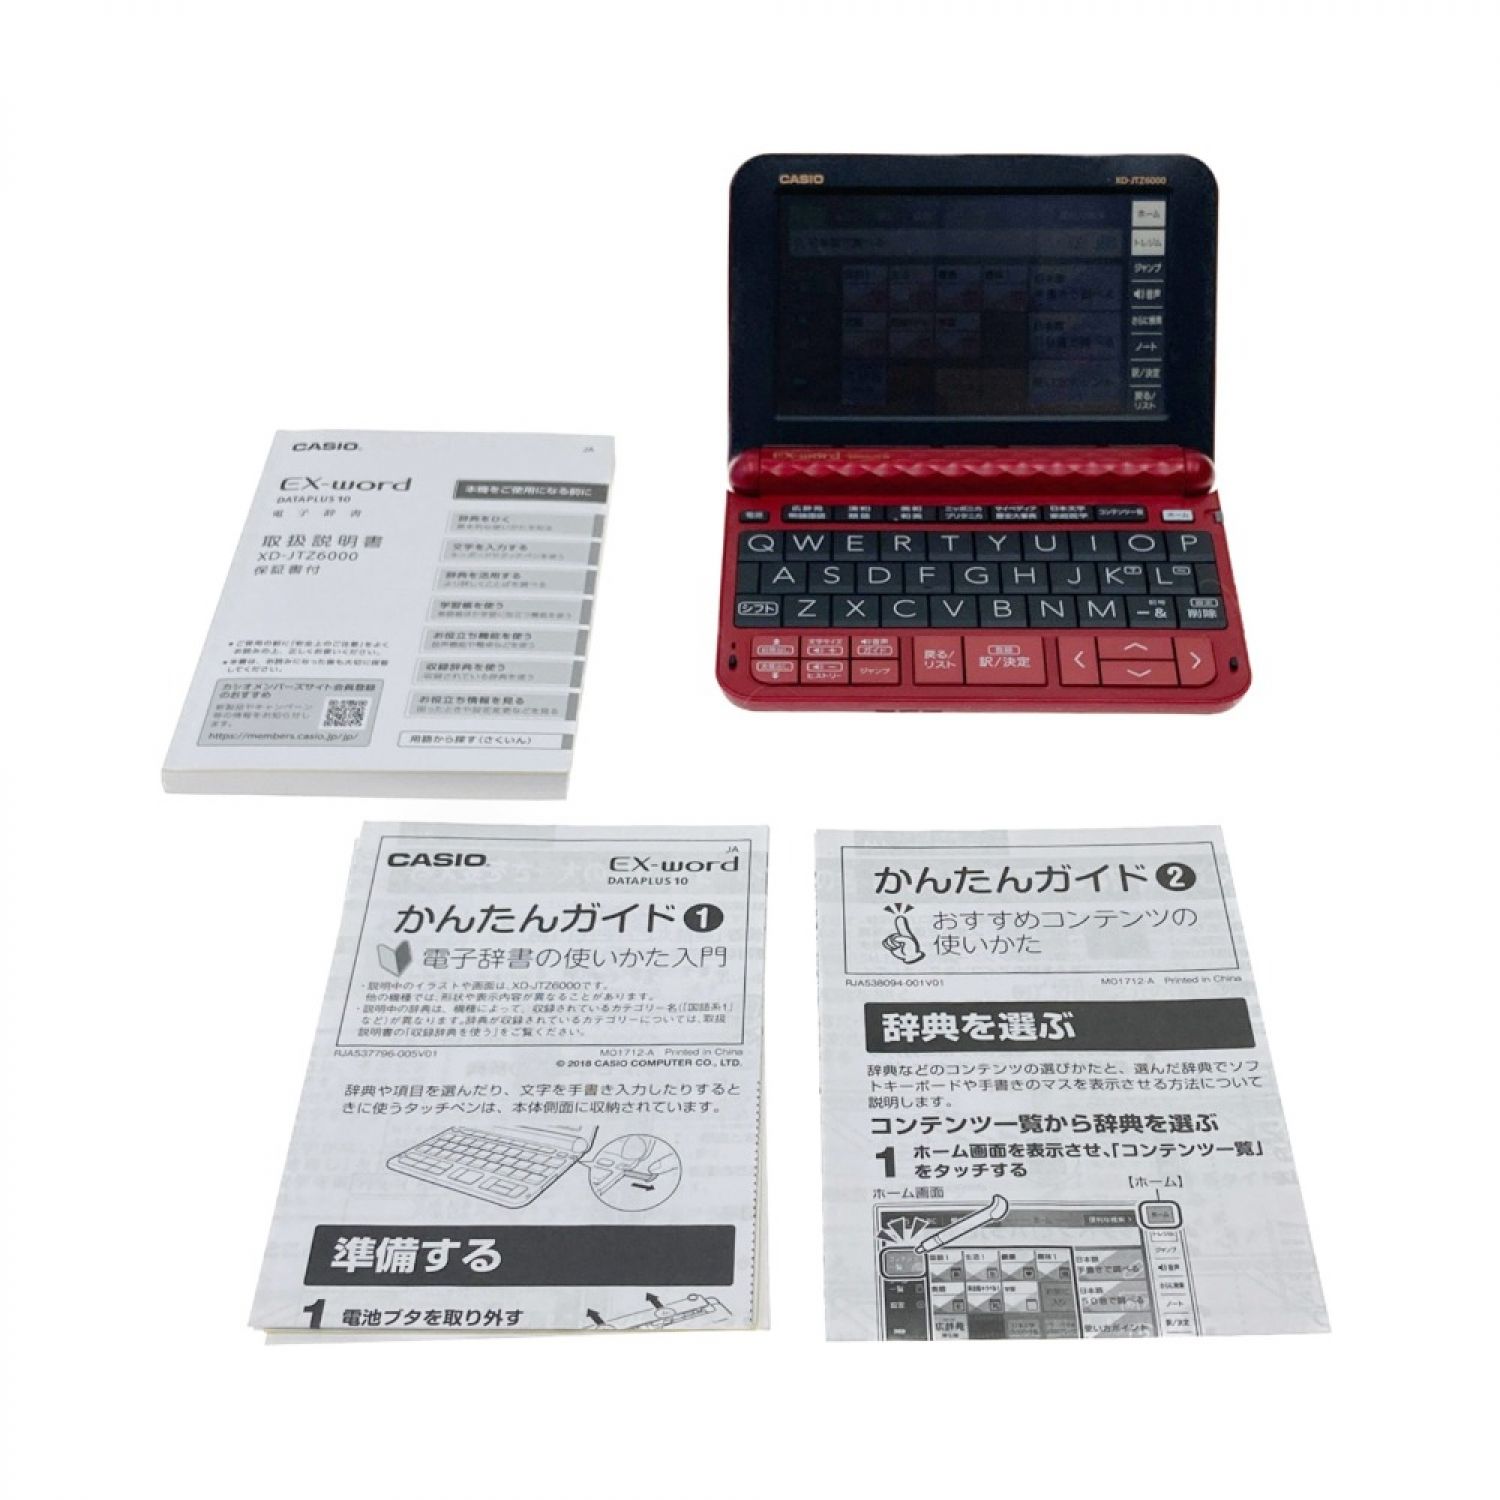 中古】 CASIO カシオ EX-word DATAPLUS10 電子辞書 XD-JTZ6000 Bランク ...